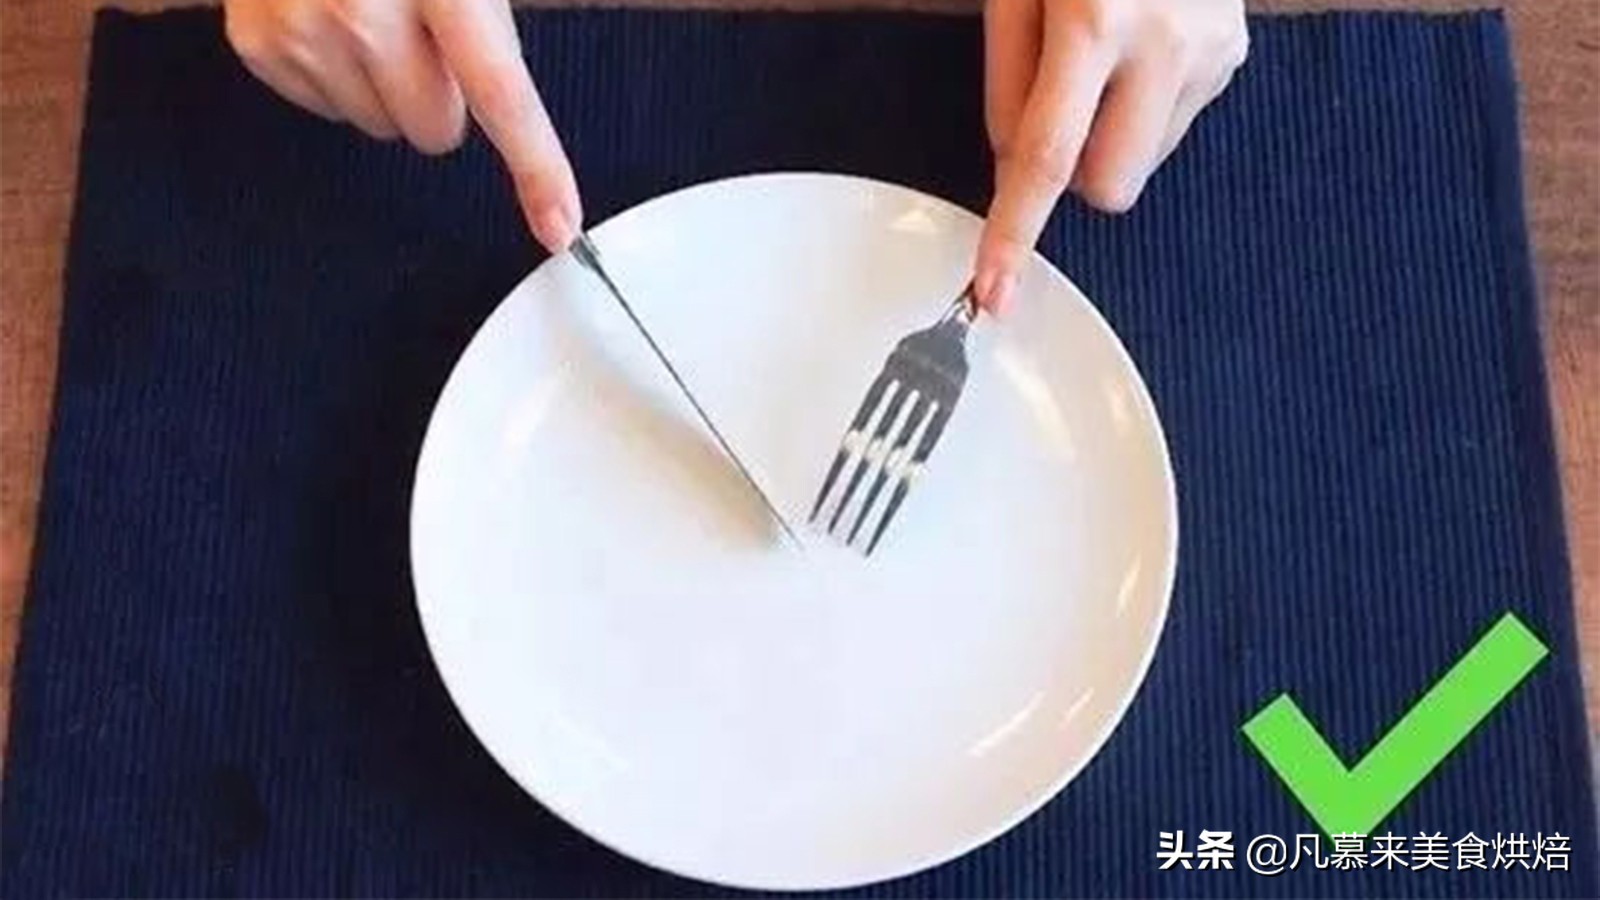 牛排怎么吃刀叉怎么拿，吃牛排拿刀叉的正确方法介绍？